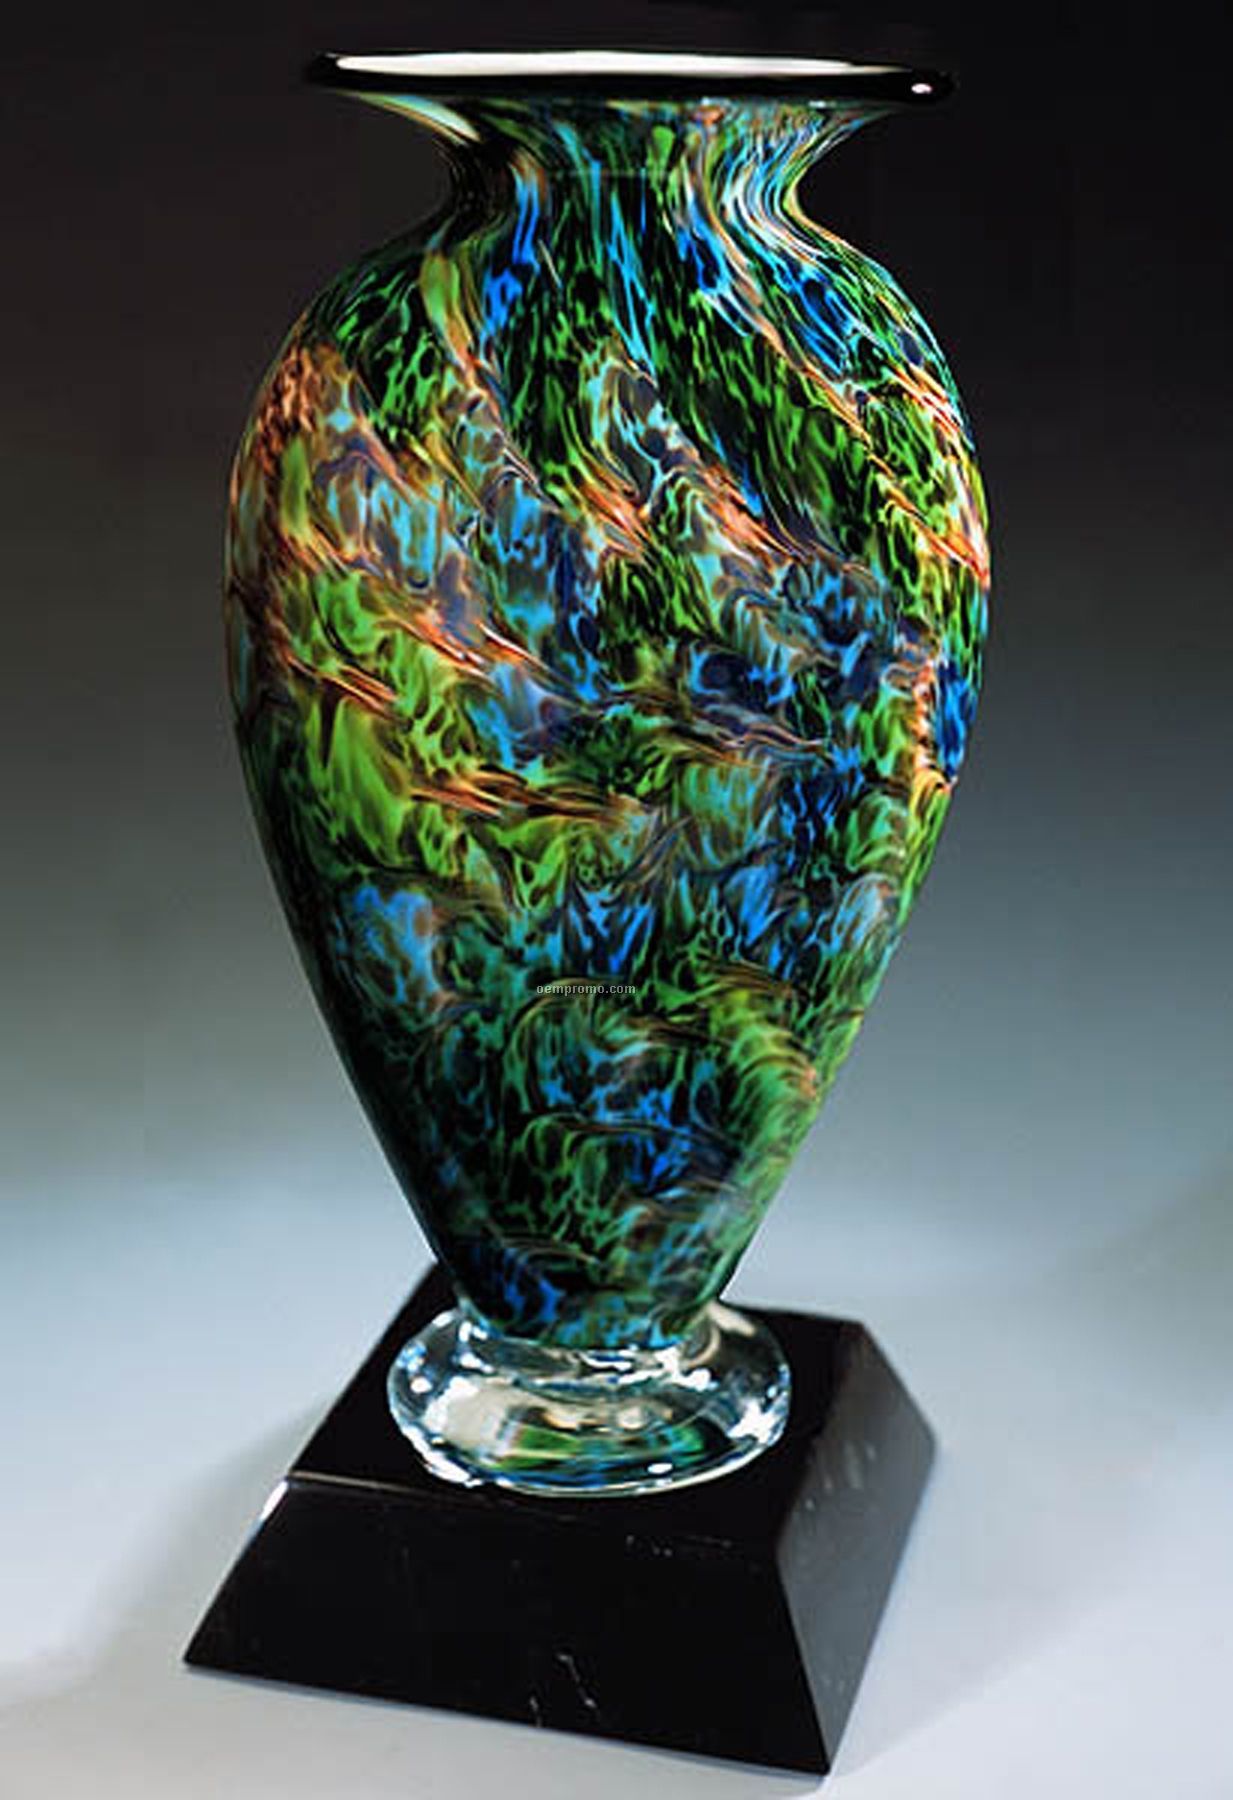 Jade Glen Mercury Sculpture Award W/O Base (5"X10")